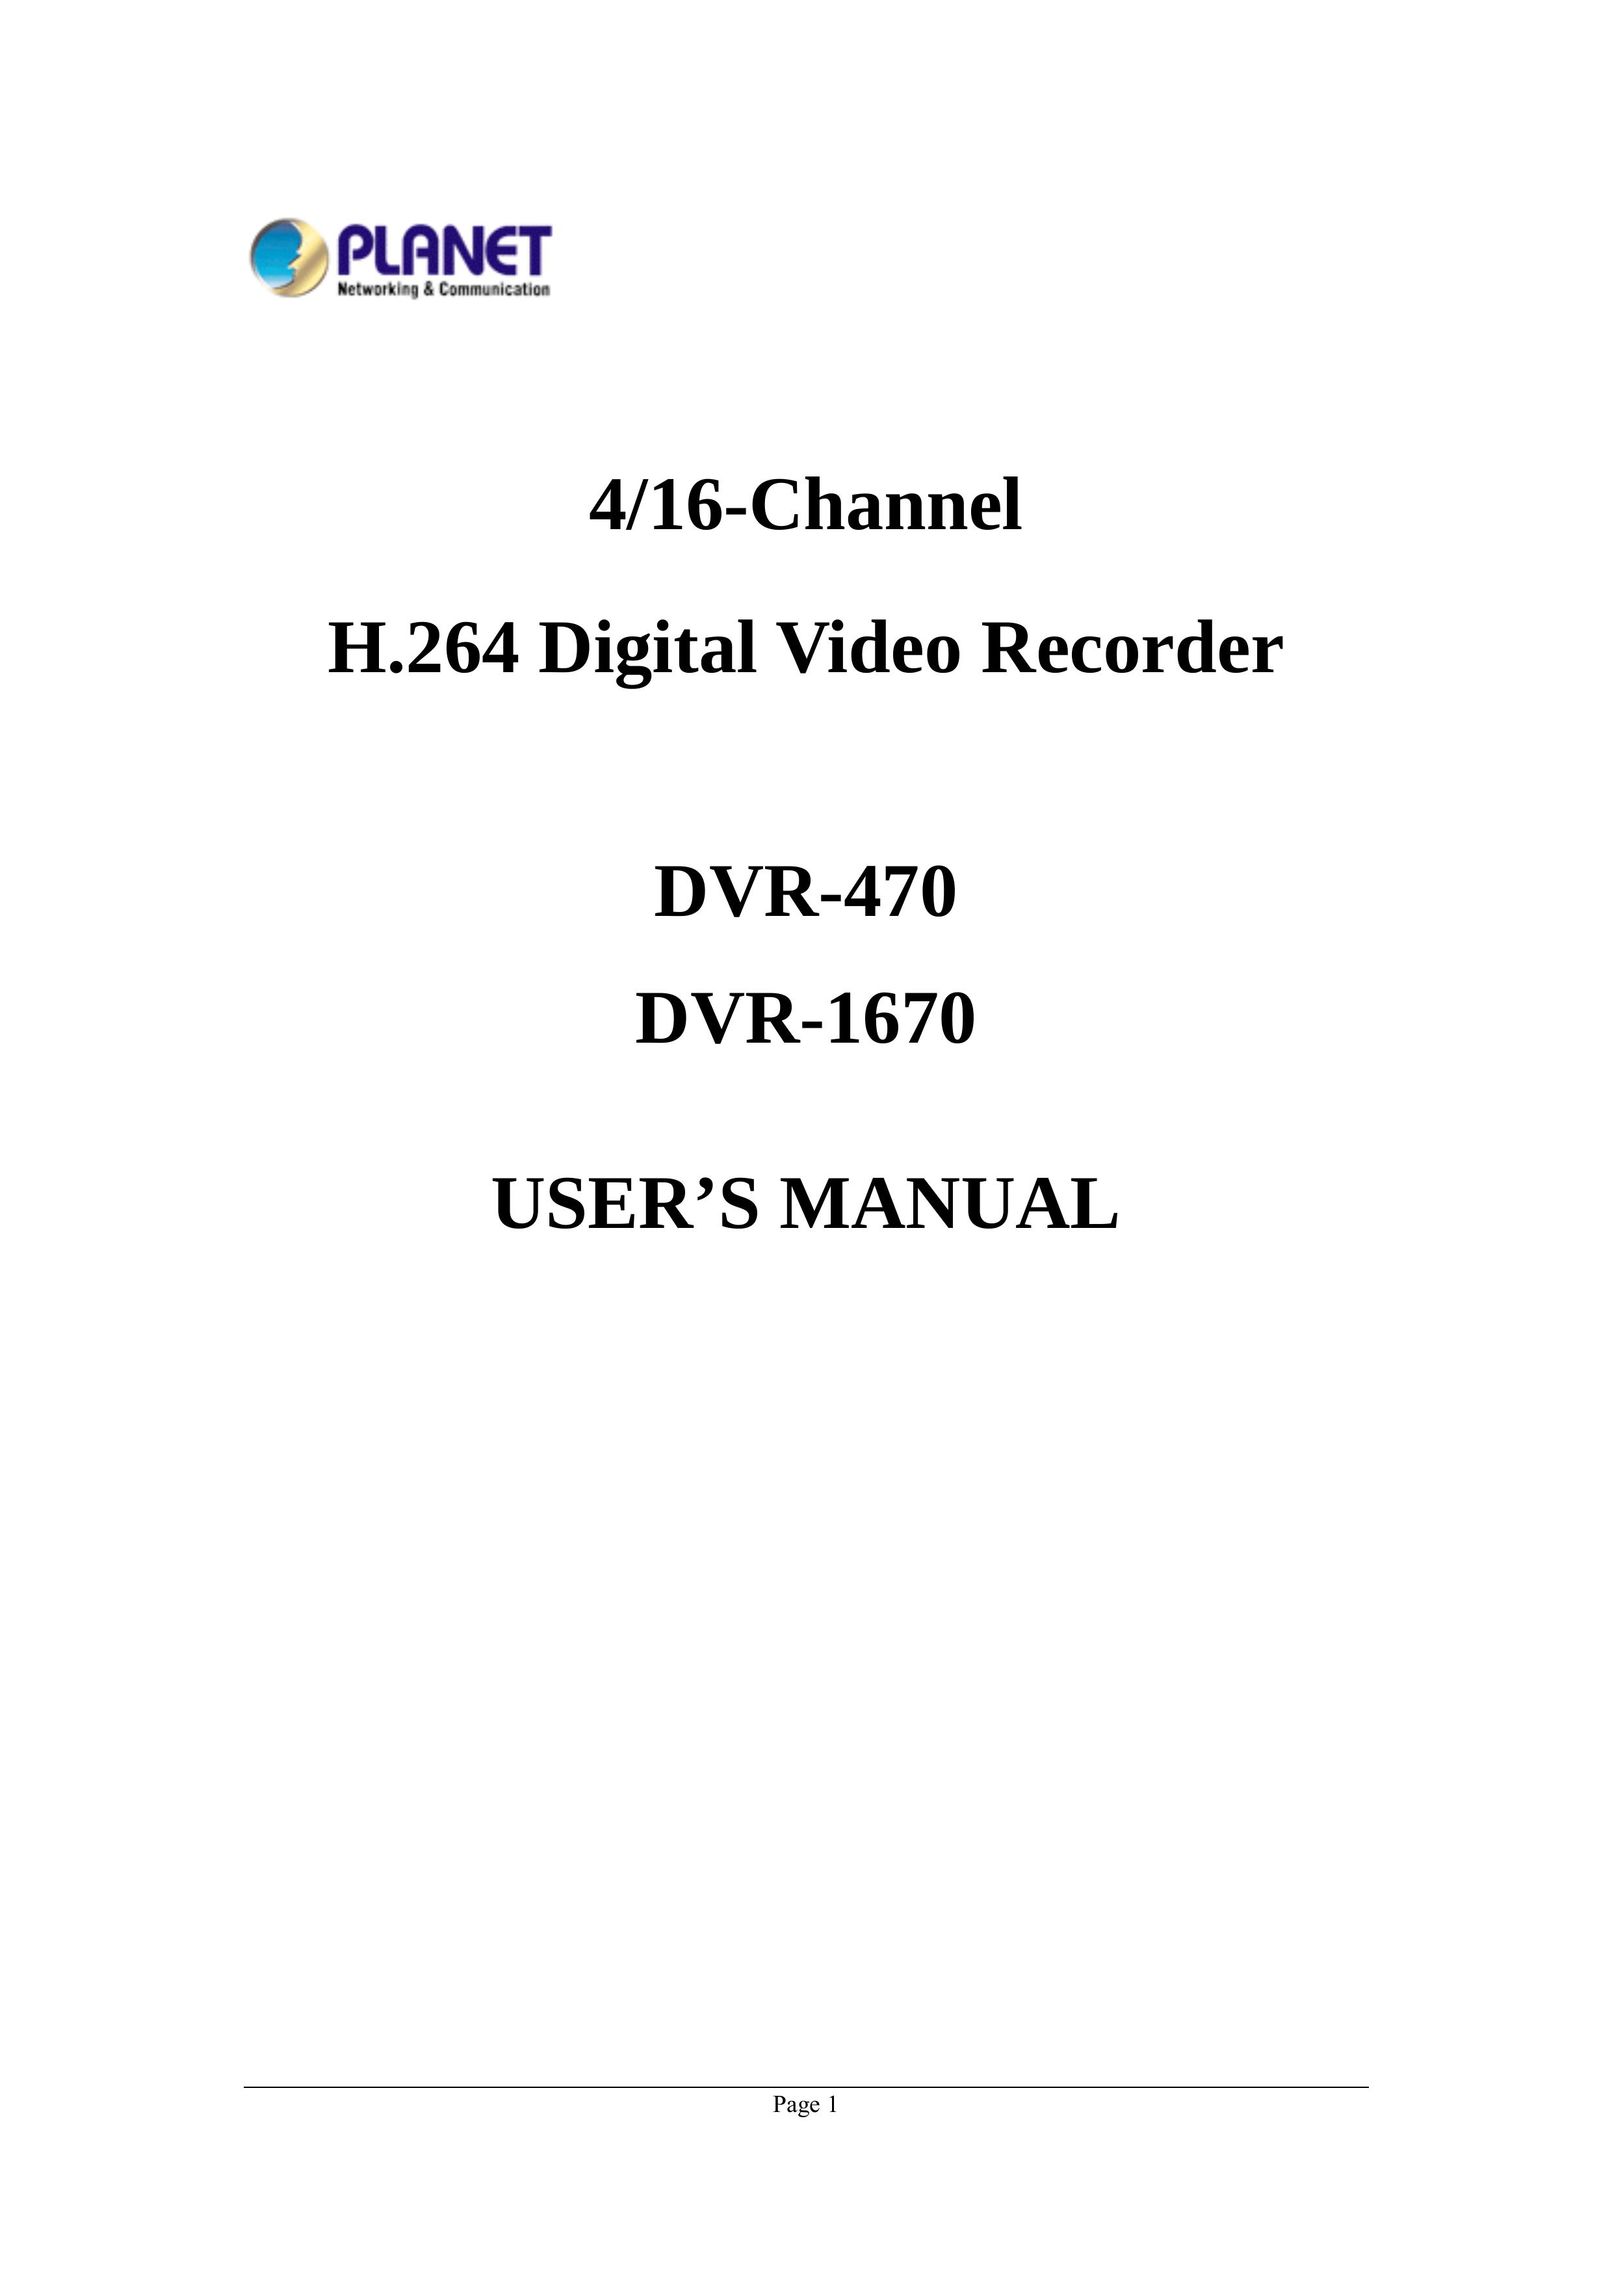 Planet Technology DVR-470 DVR User Manual